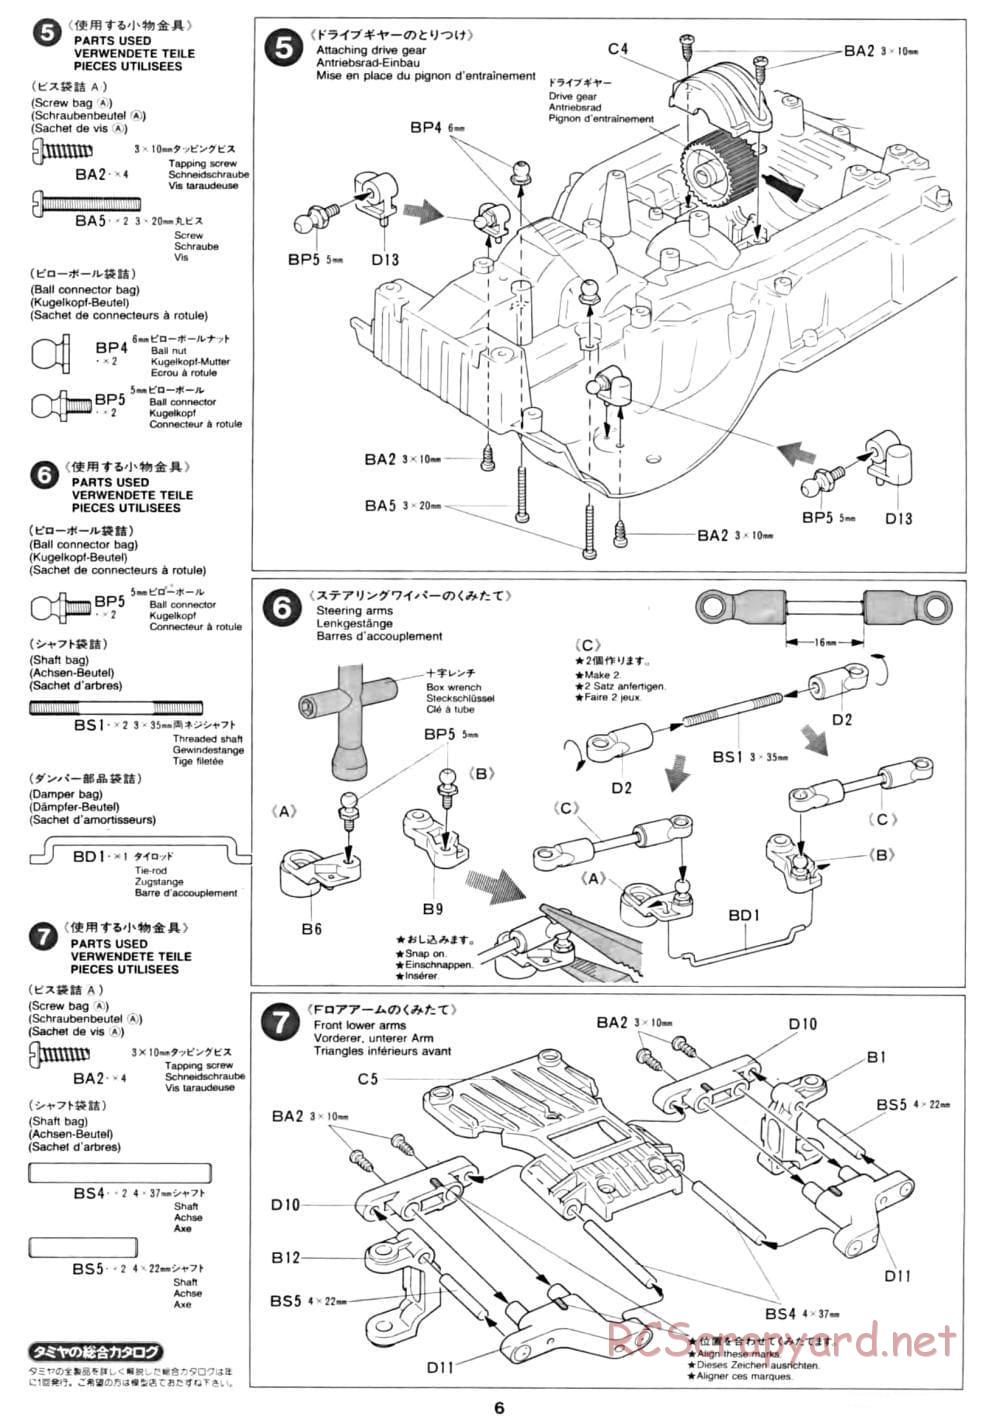 Tamiya - CC-01 Chassis - Manual - Page 6